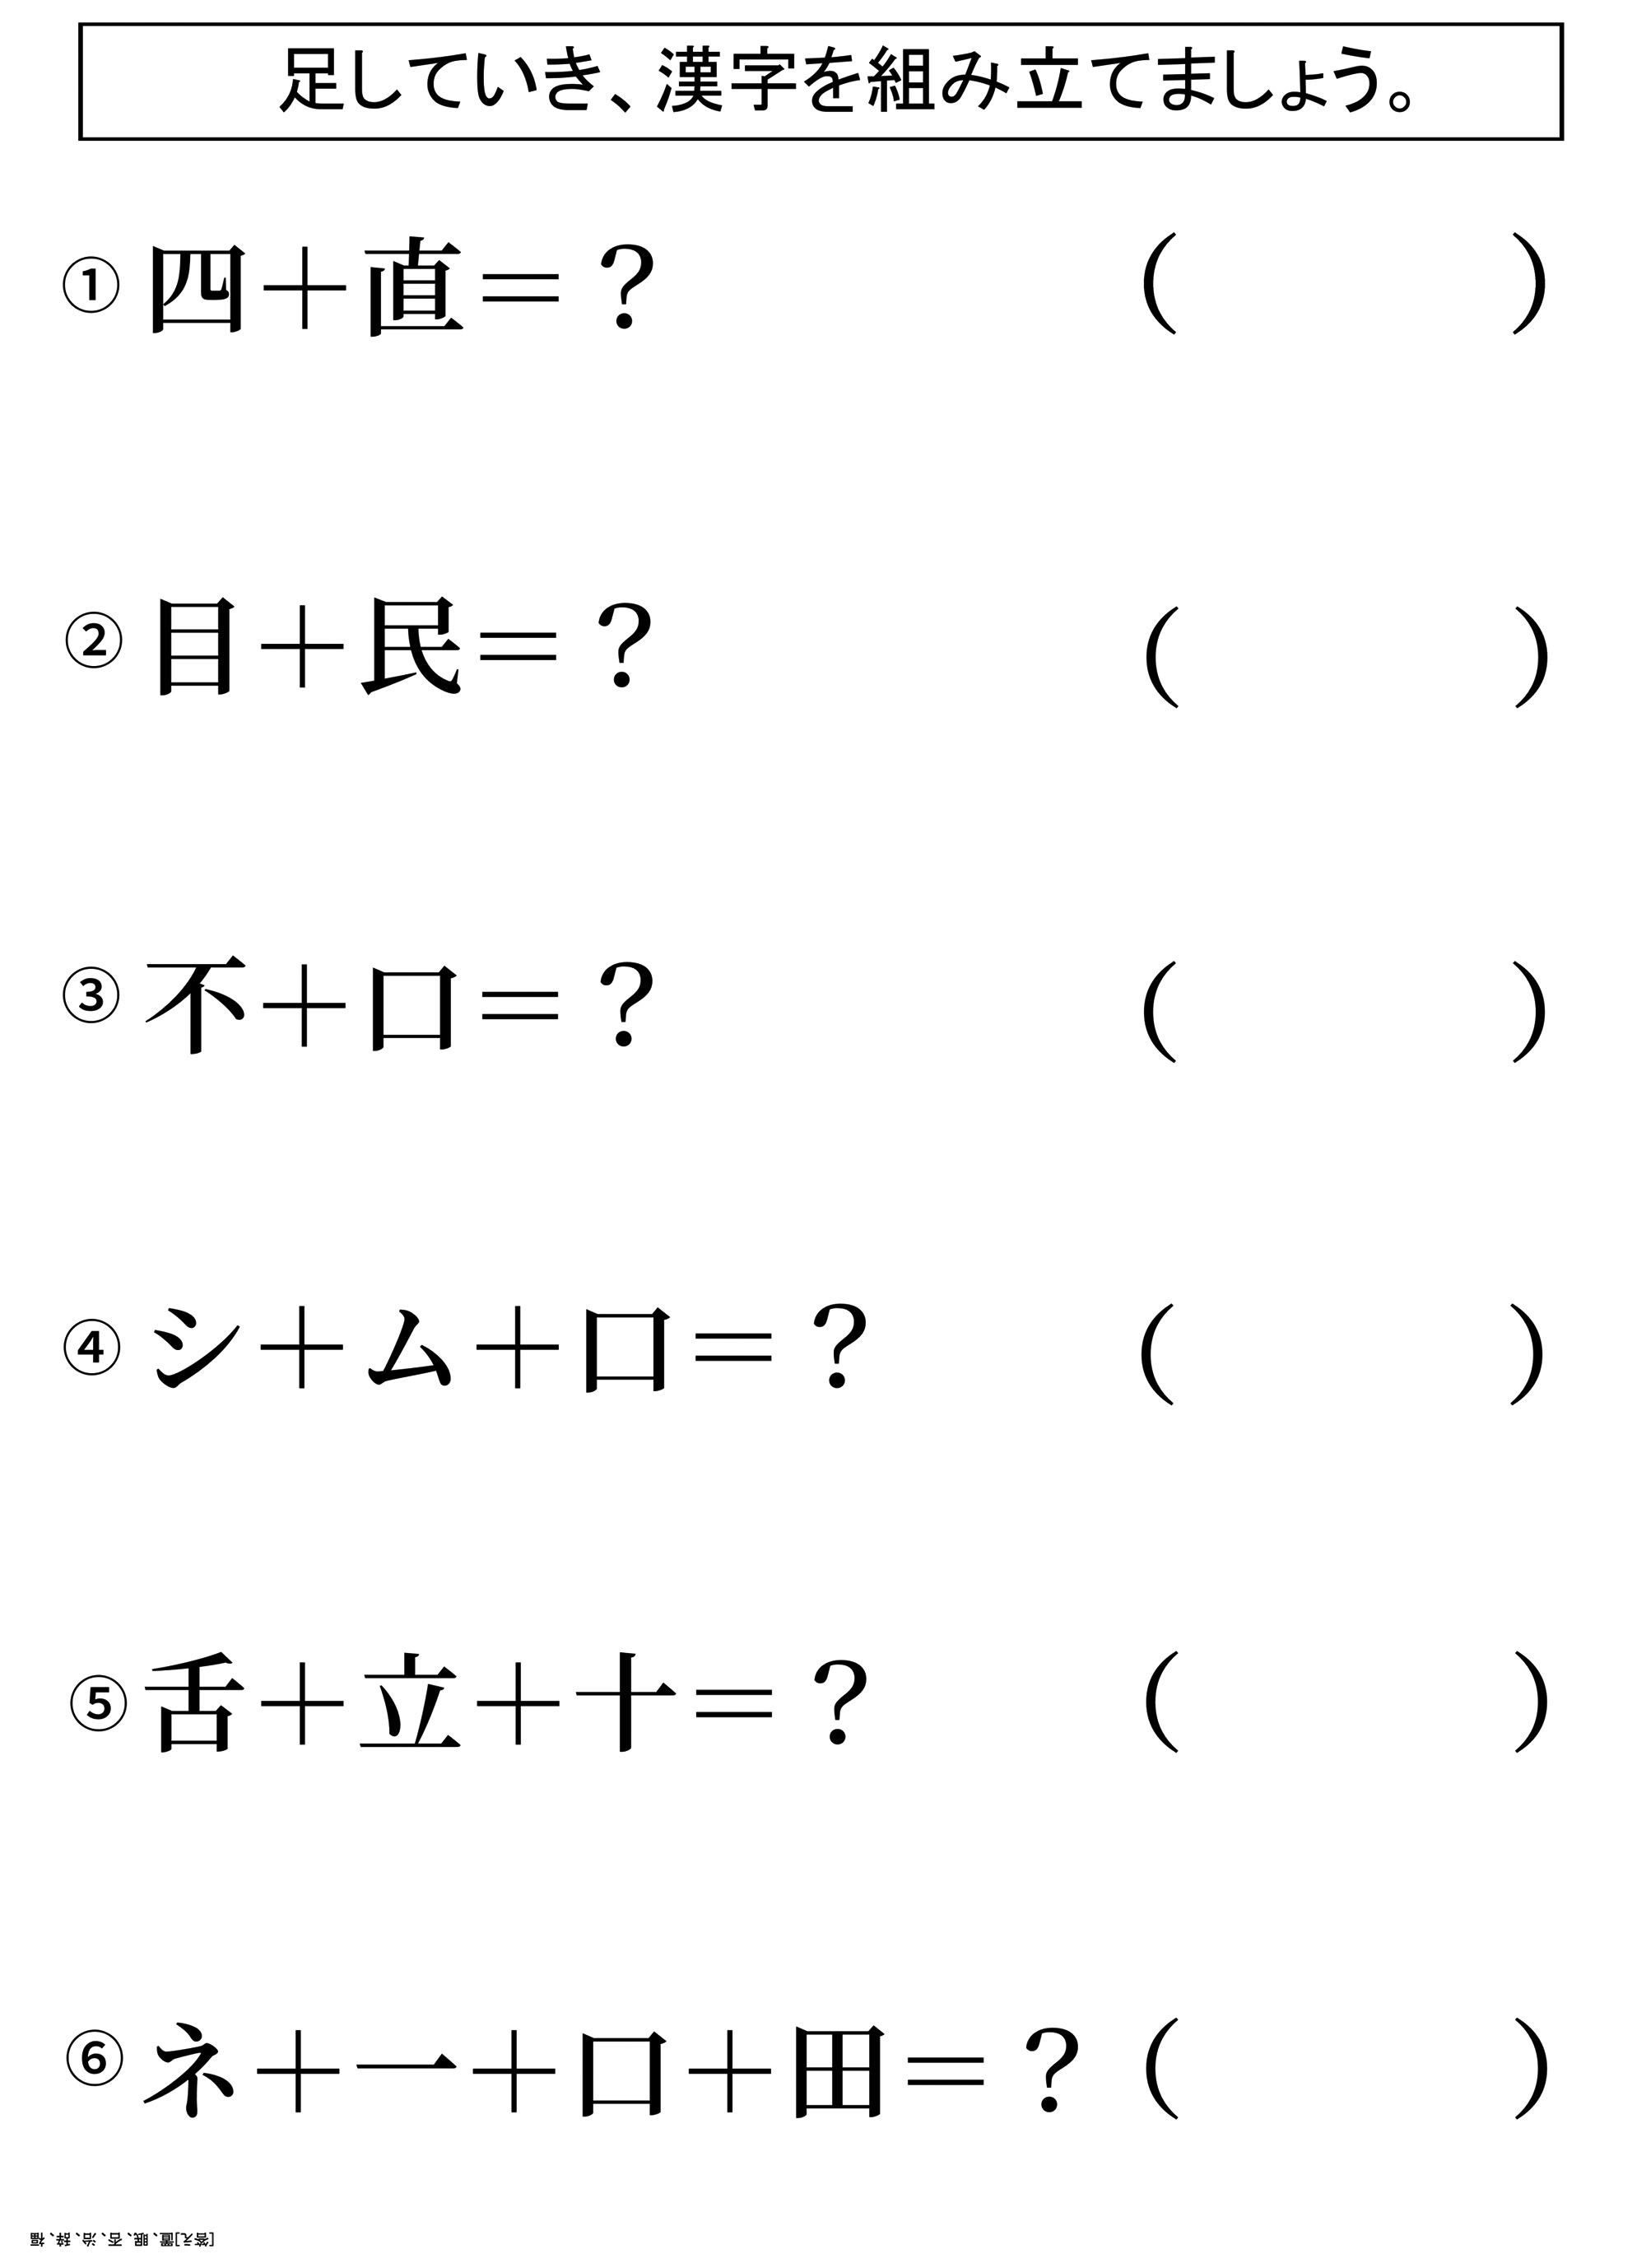 レク素材 漢字組み立てクイズ 介護レク広場 レク素材やレクネタ 企画書 の無料ダウンロード